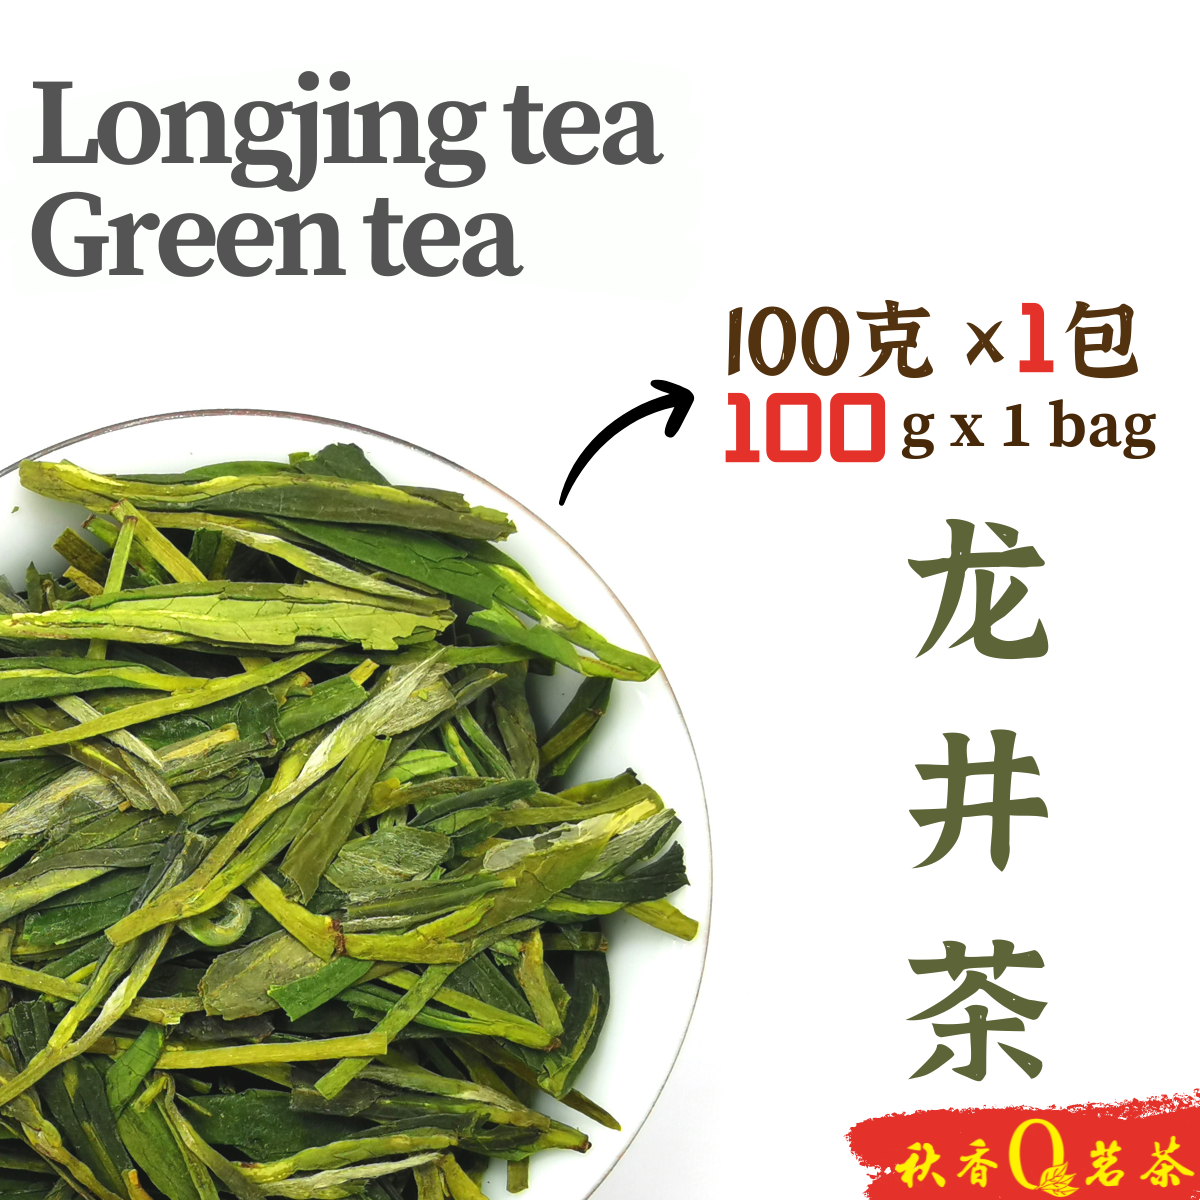 龙井 Longjing tea【100g】|【绿茶 Green tea】